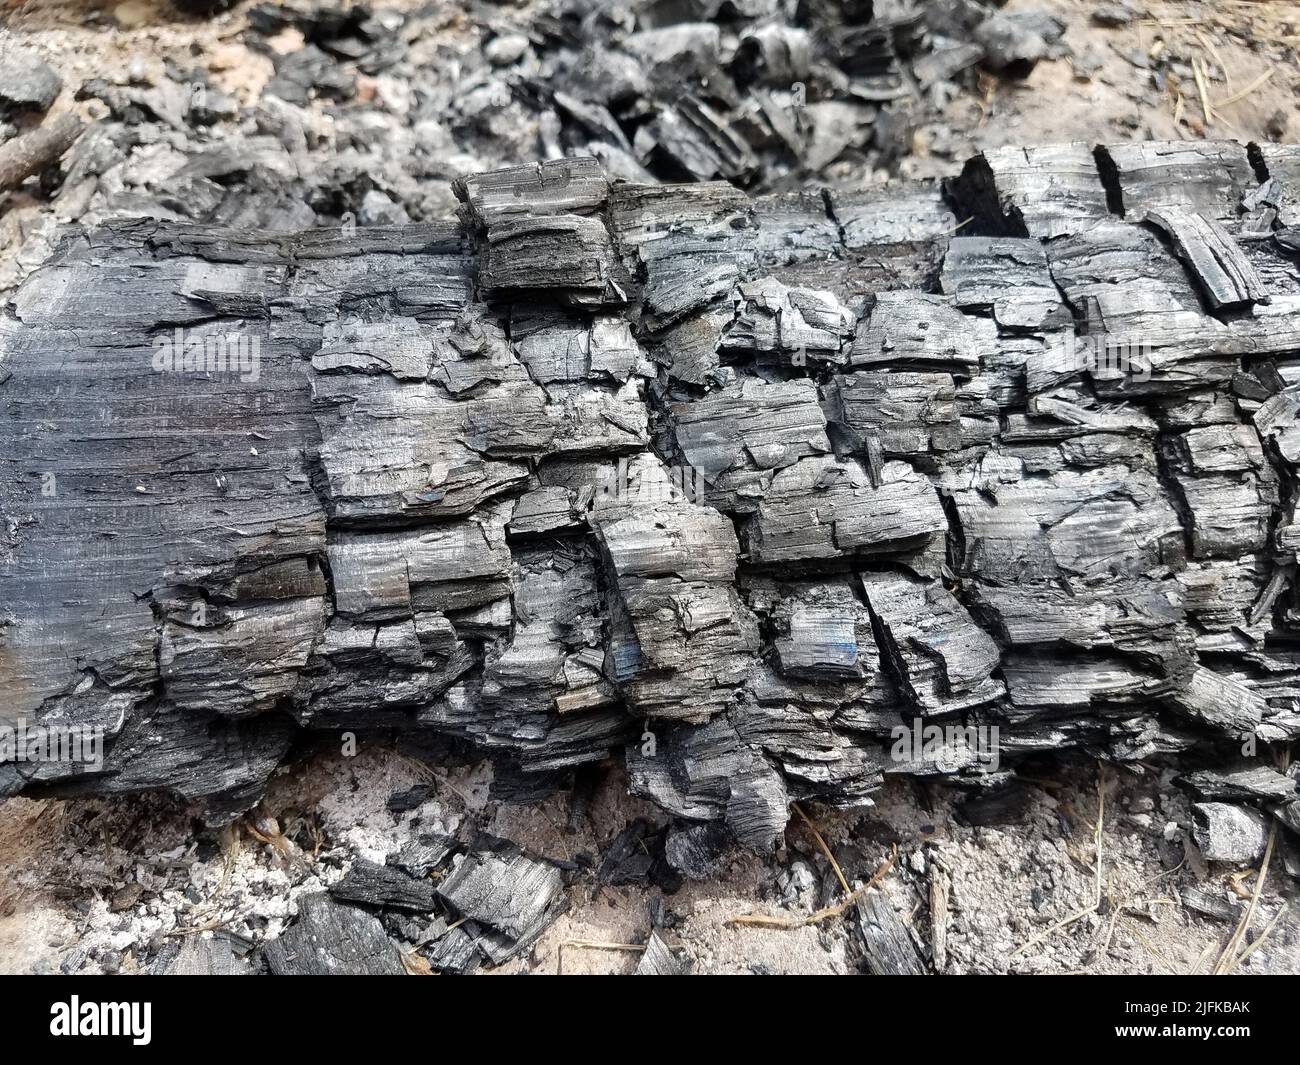 se eliminaron los troncos quemados y el carbón negro usado. Foto de stock